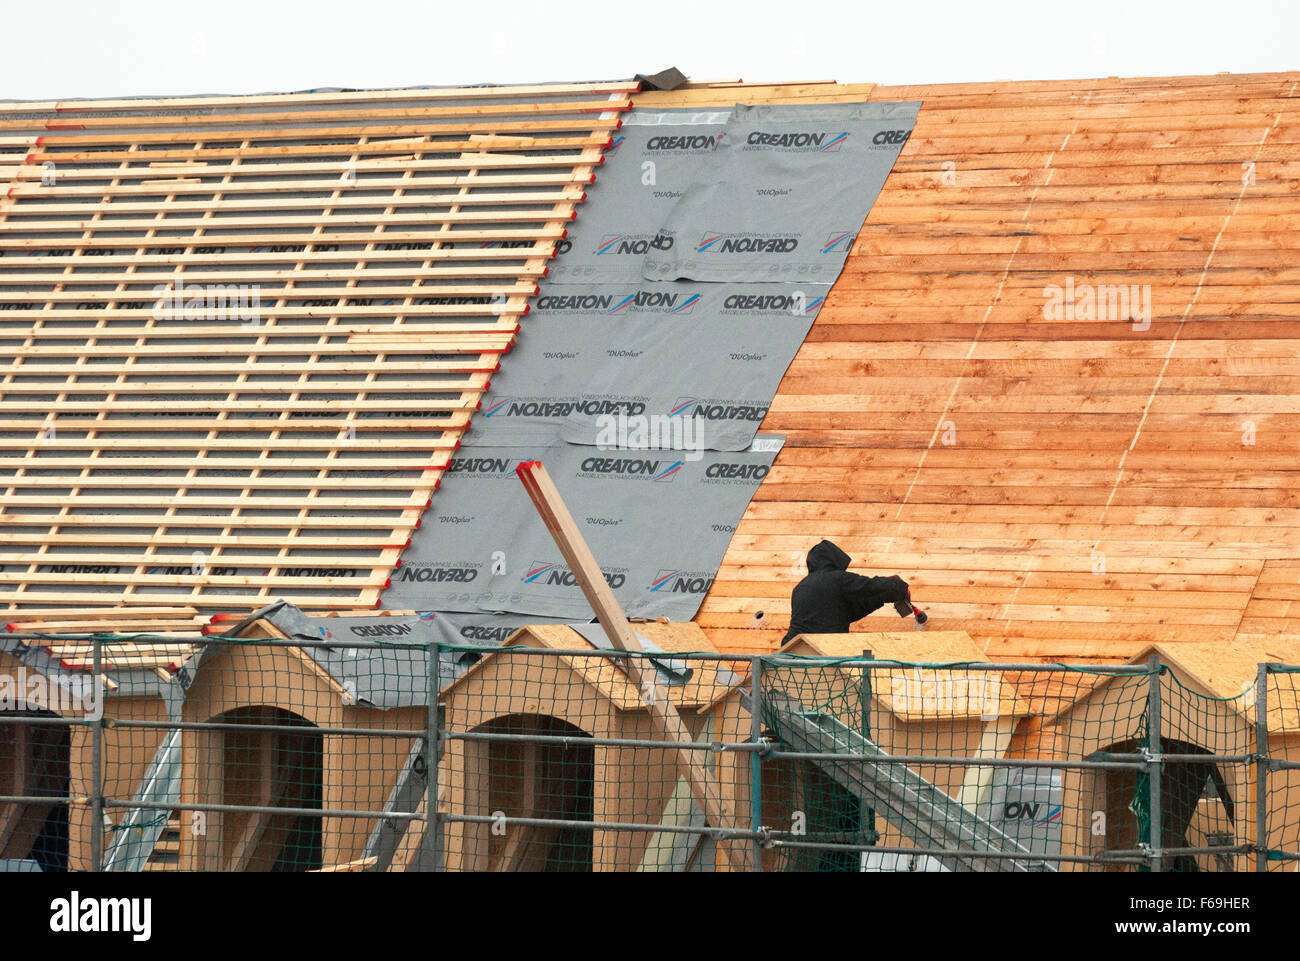 Builder historique recréant le style de toiture inclinée à Dresde, Allemagne Banque D'Images